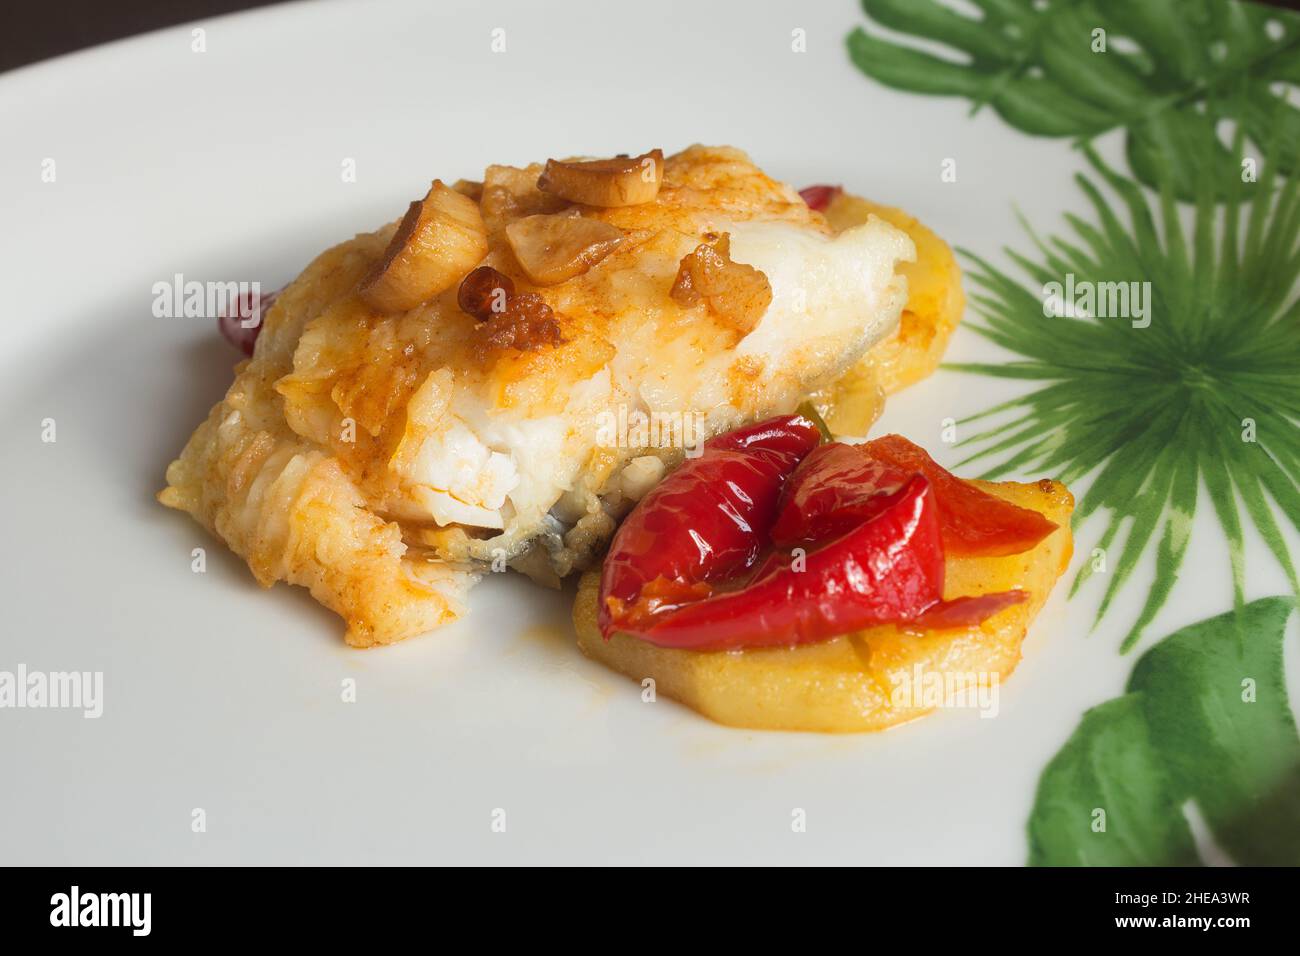 Placcatura di merluzzo verniciato con uovo tostato accompagnato da peperoni rossi, patate e aglio su un piatto con decorazione astratta. Pesce e salute. Foto Stock